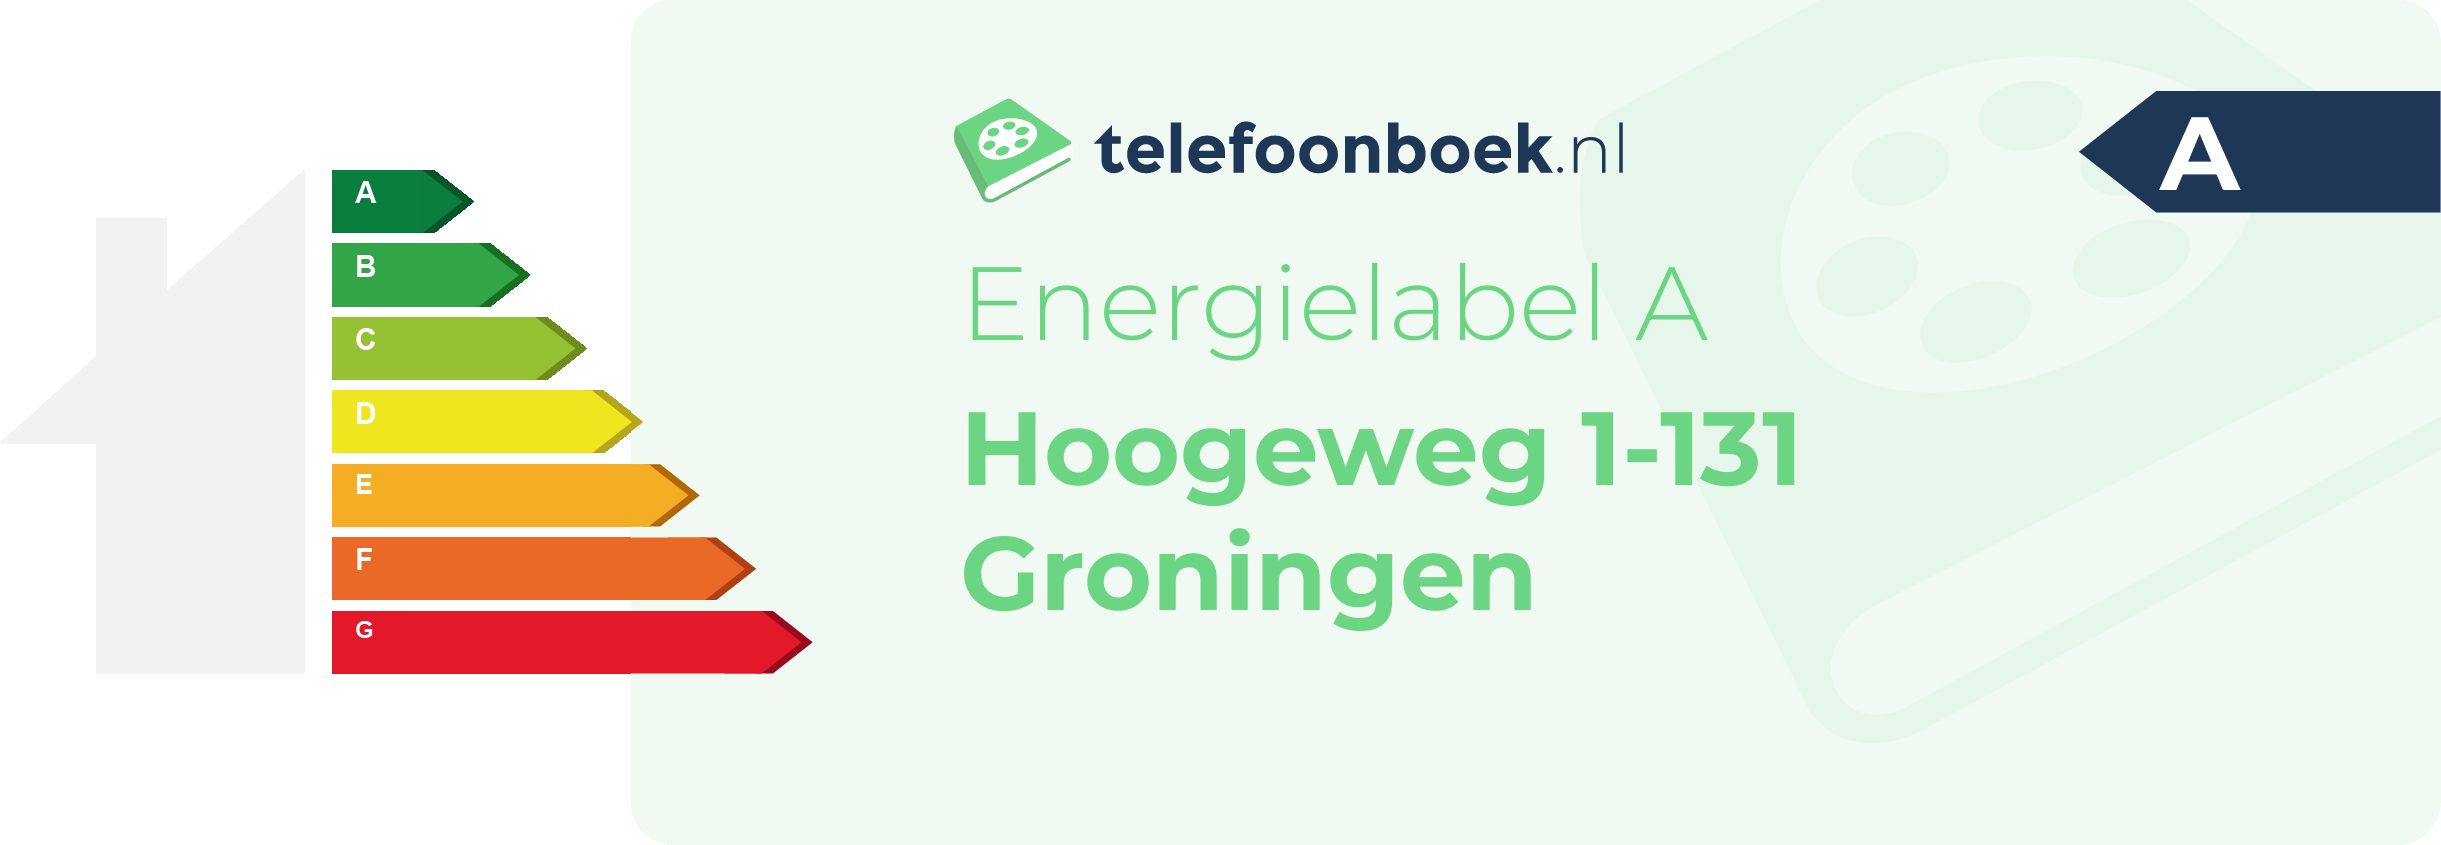 Energielabel Hoogeweg 1-131 Groningen